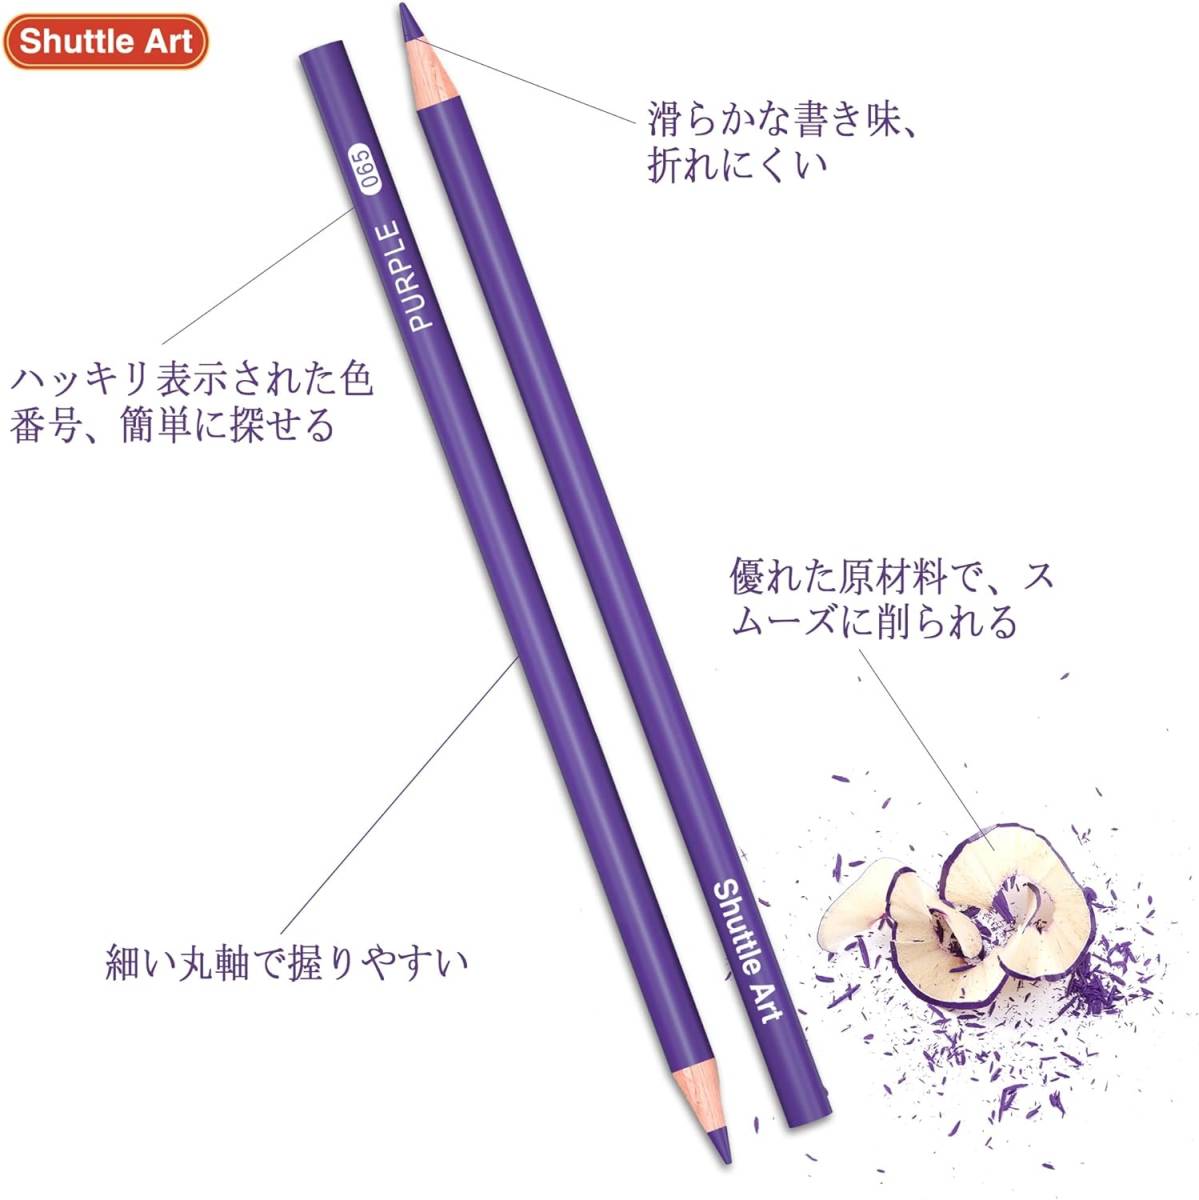 Shuttle Art 色鉛筆 172色 油性色鉛筆 カラーペンセット 大人の塗り絵 メタリック色 イラスト デザイン デッサン の画像4